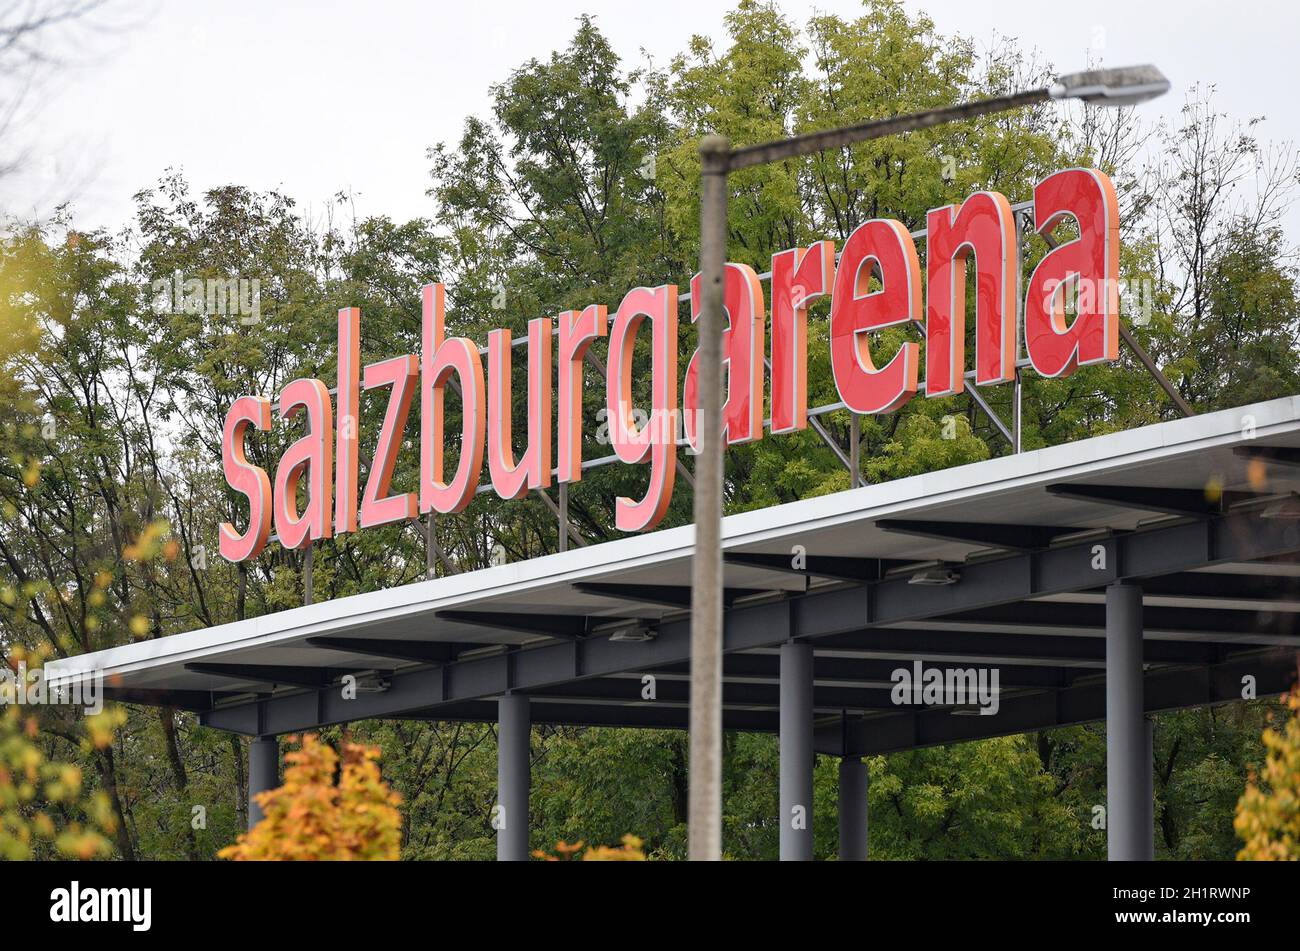 Die Salzburgarena in der österreichischen Landeshauptstadt Salzburg ist eine multifunktionale Halle - The Salzburgarena in the Austrian capital Salzbu Stock Photo